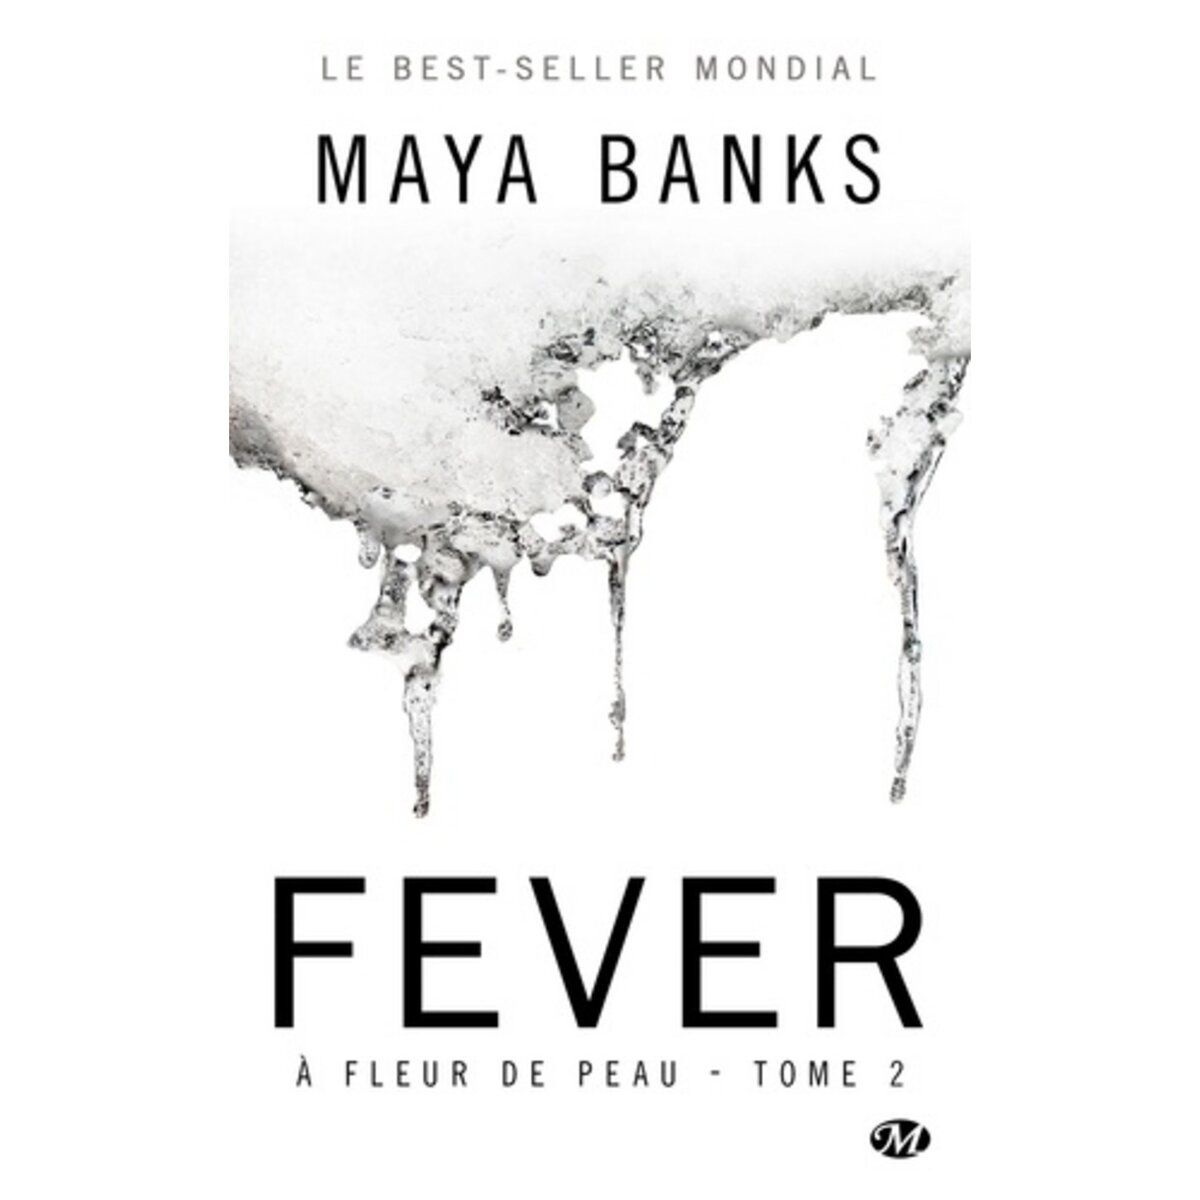  A FLEUR DE PEAU TOME 2 : FEVER, Banks Maya